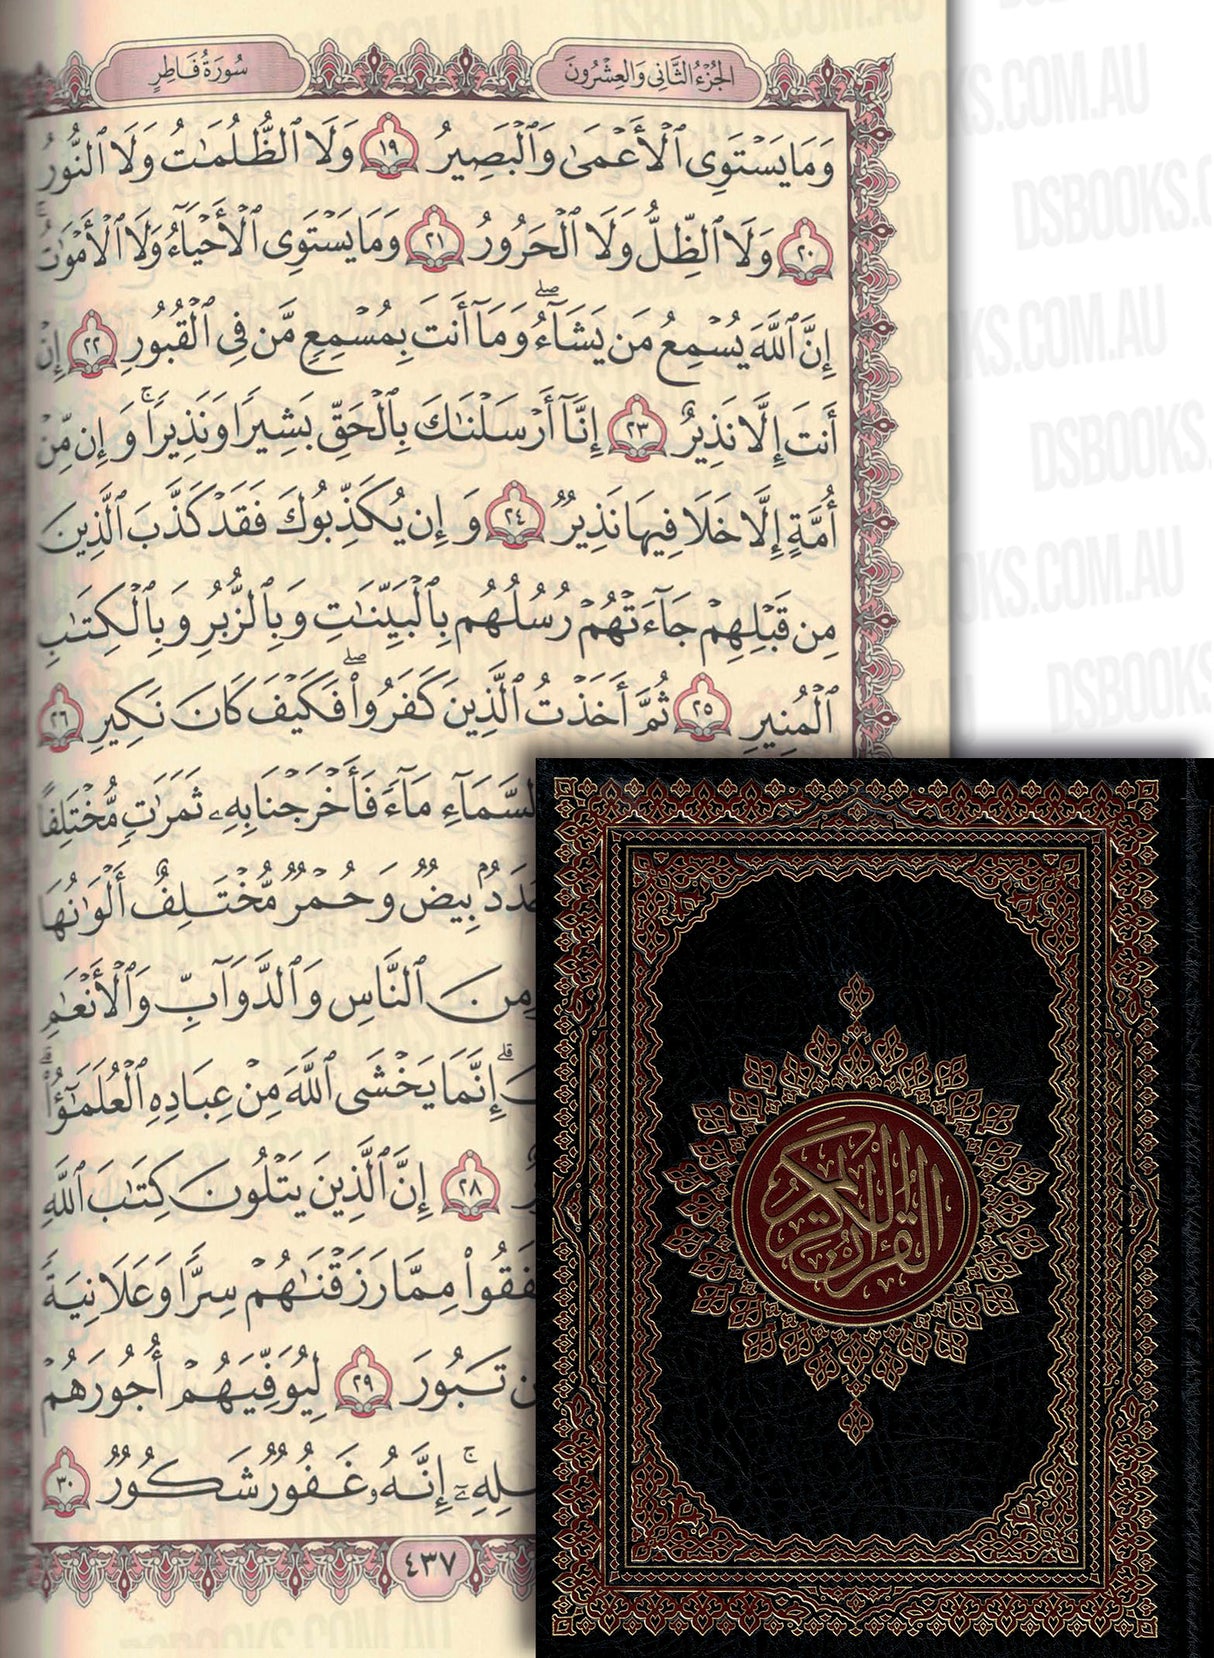 Al Quran ( 17 x 24 x 3 cm) (Uthmani)